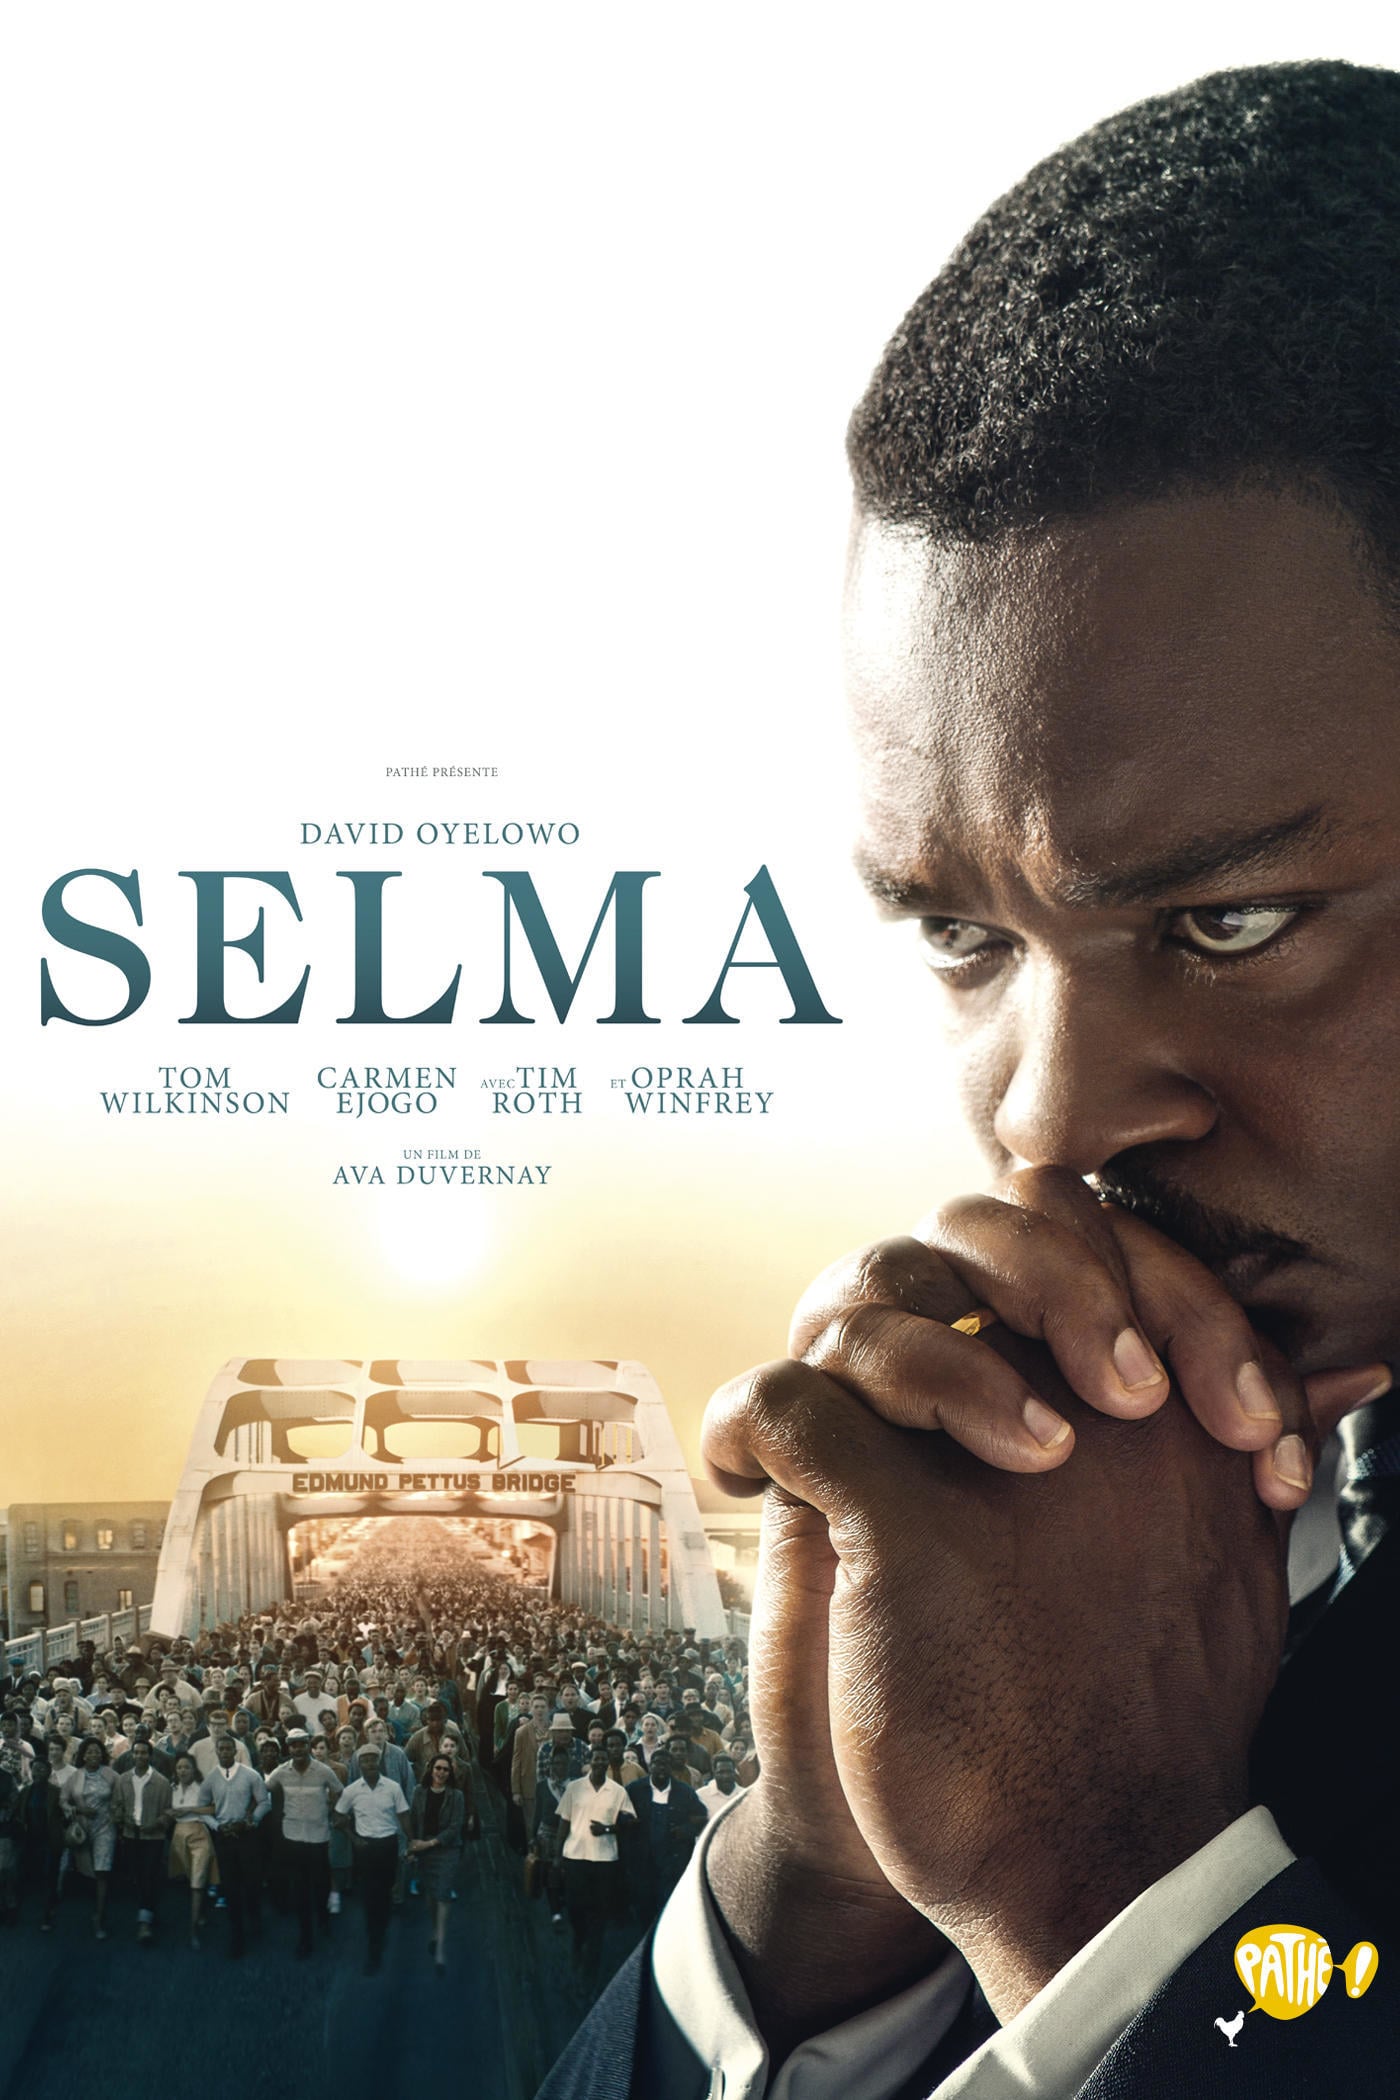 Affiche du film "Selma"